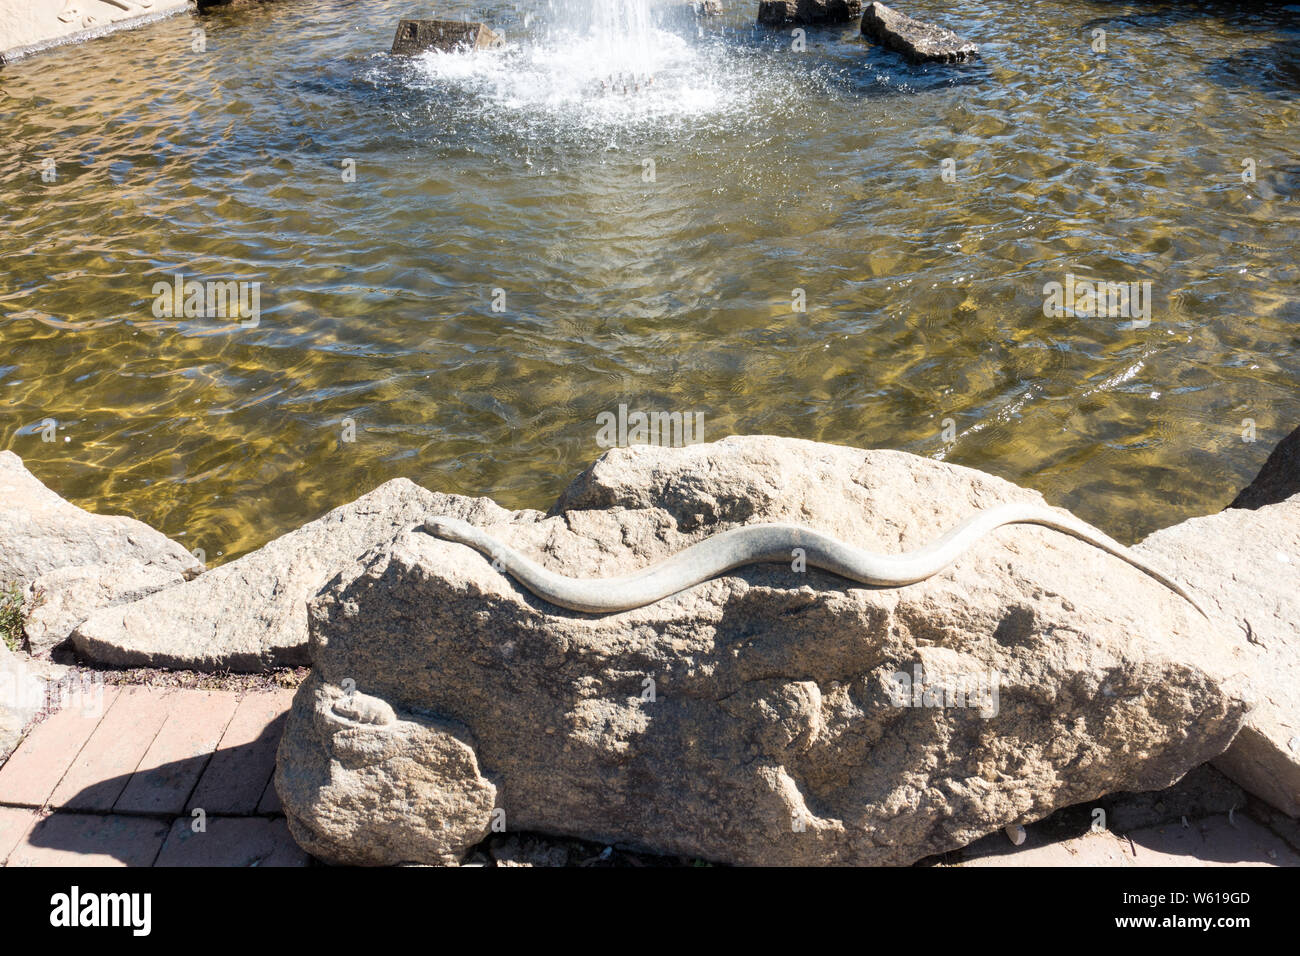 Serpent gravé sur du rock, à Tamworth Australie Bicentennial Park Fontaine. Banque D'Images